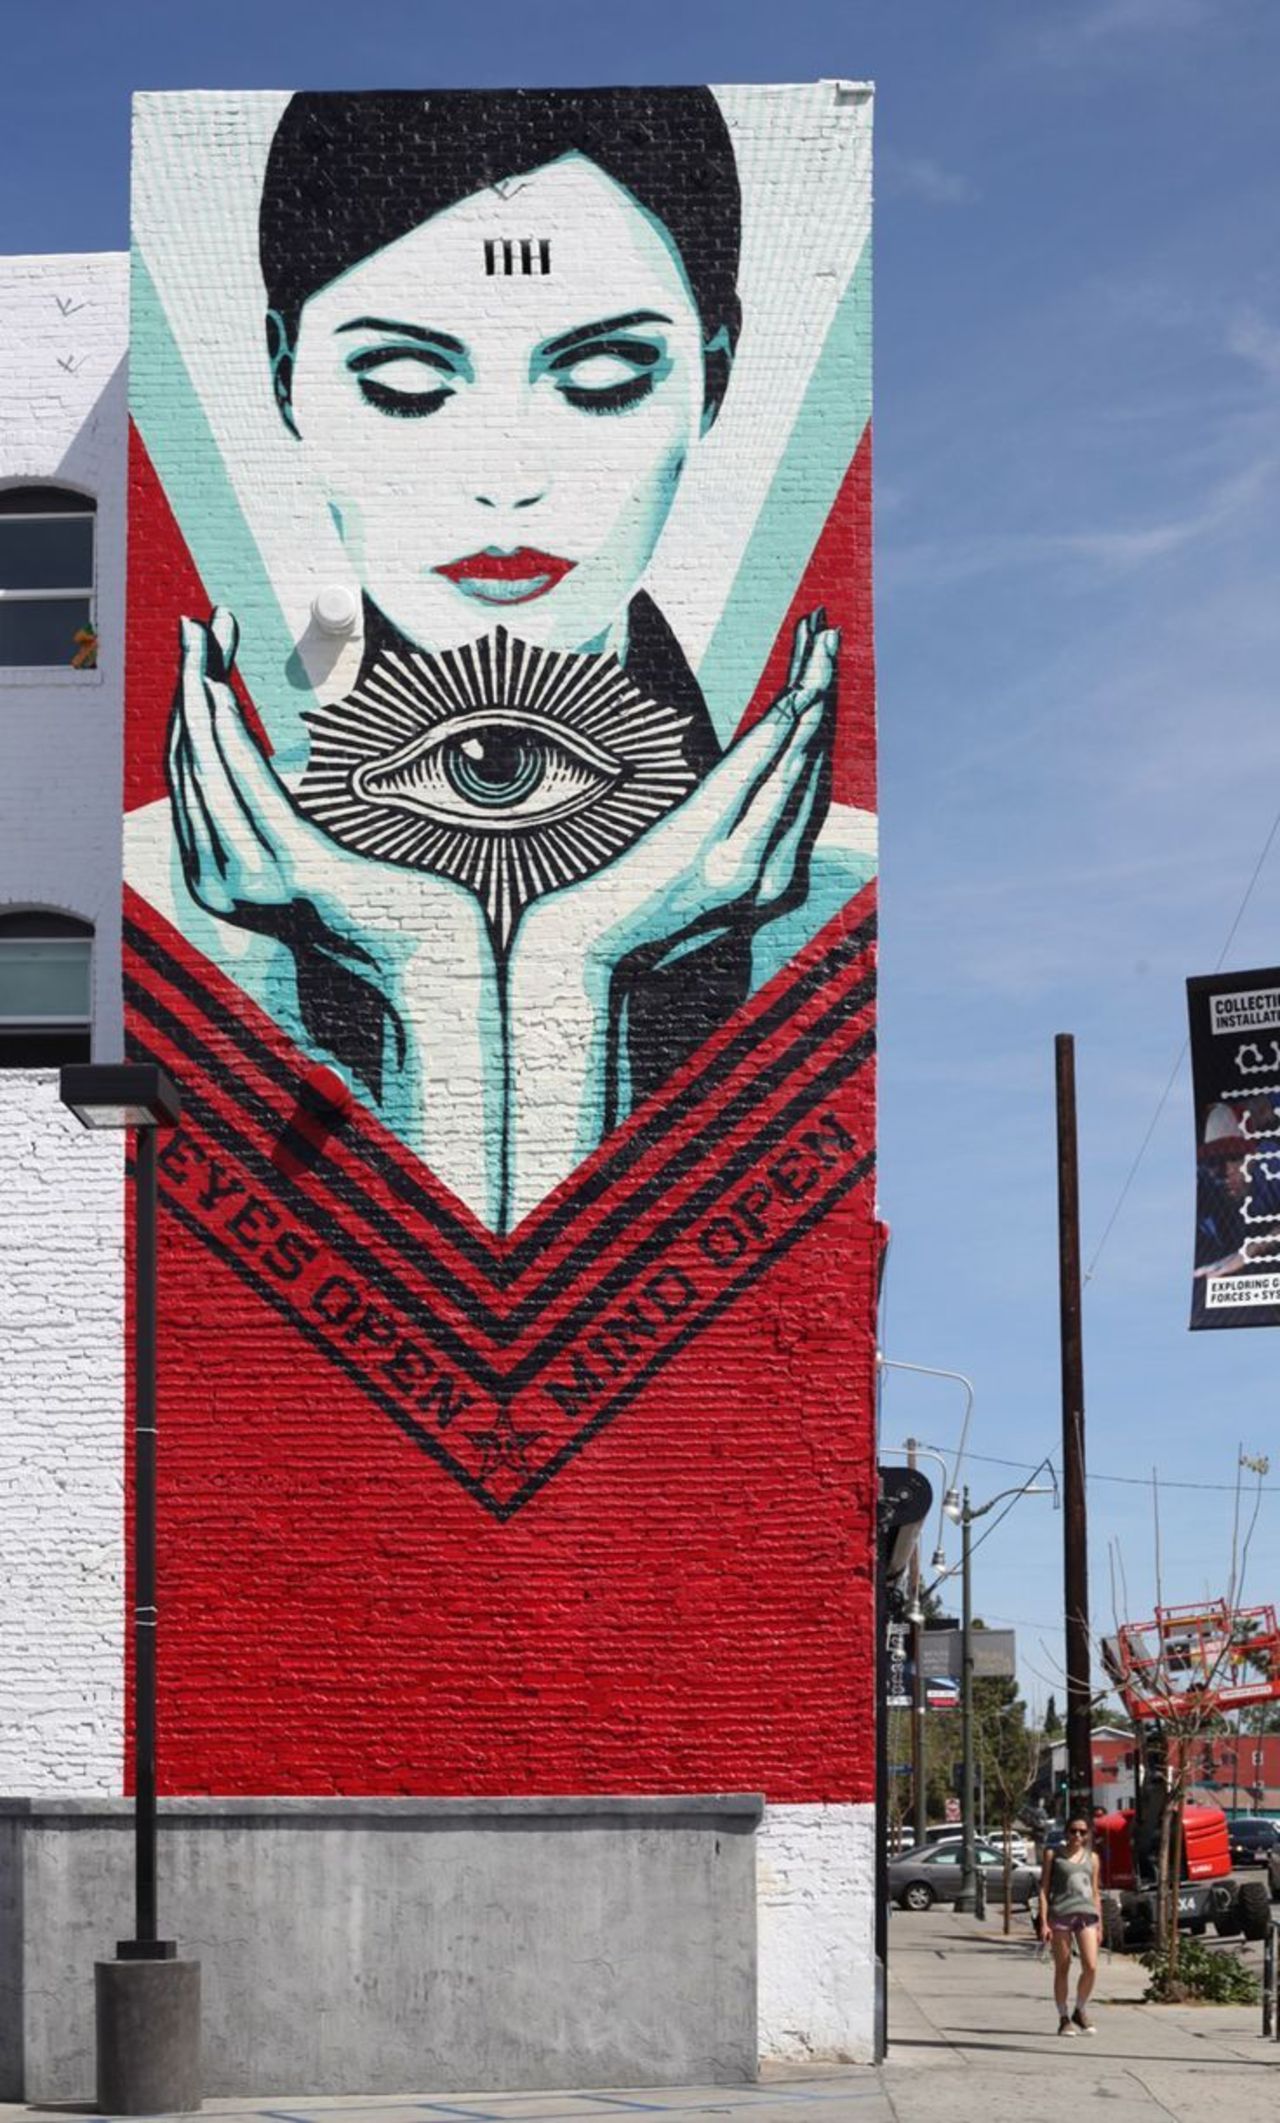 Obey - Sunset Boulevard" #streetart #mural #art #graffiti https://t.co/3OUYgktG6F